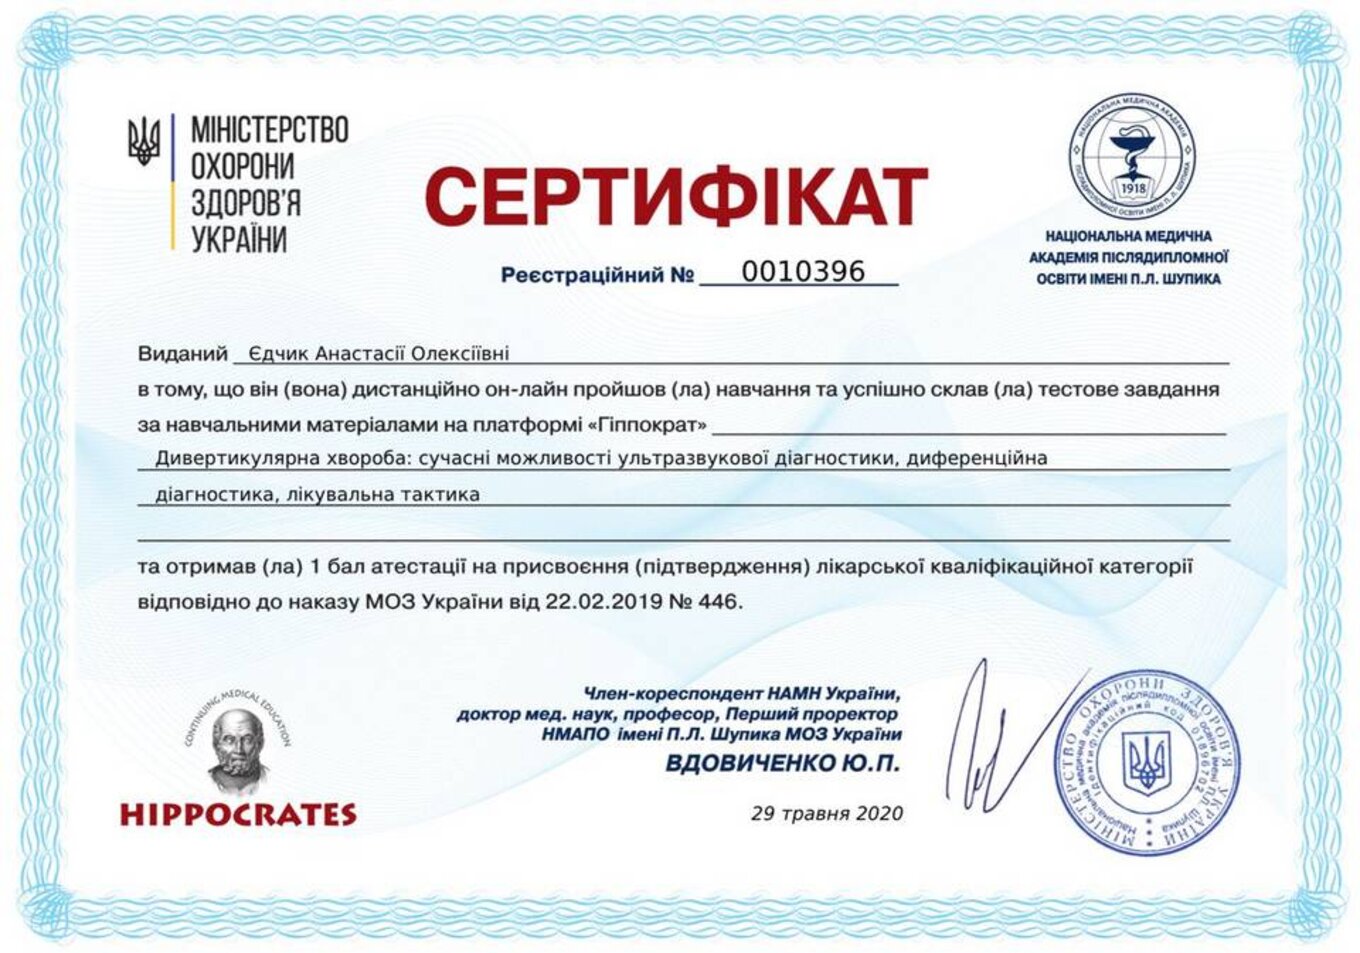 certificates/yedchik-anastasiya-oleksiyivna/erc-edchik-cert-33.jpg